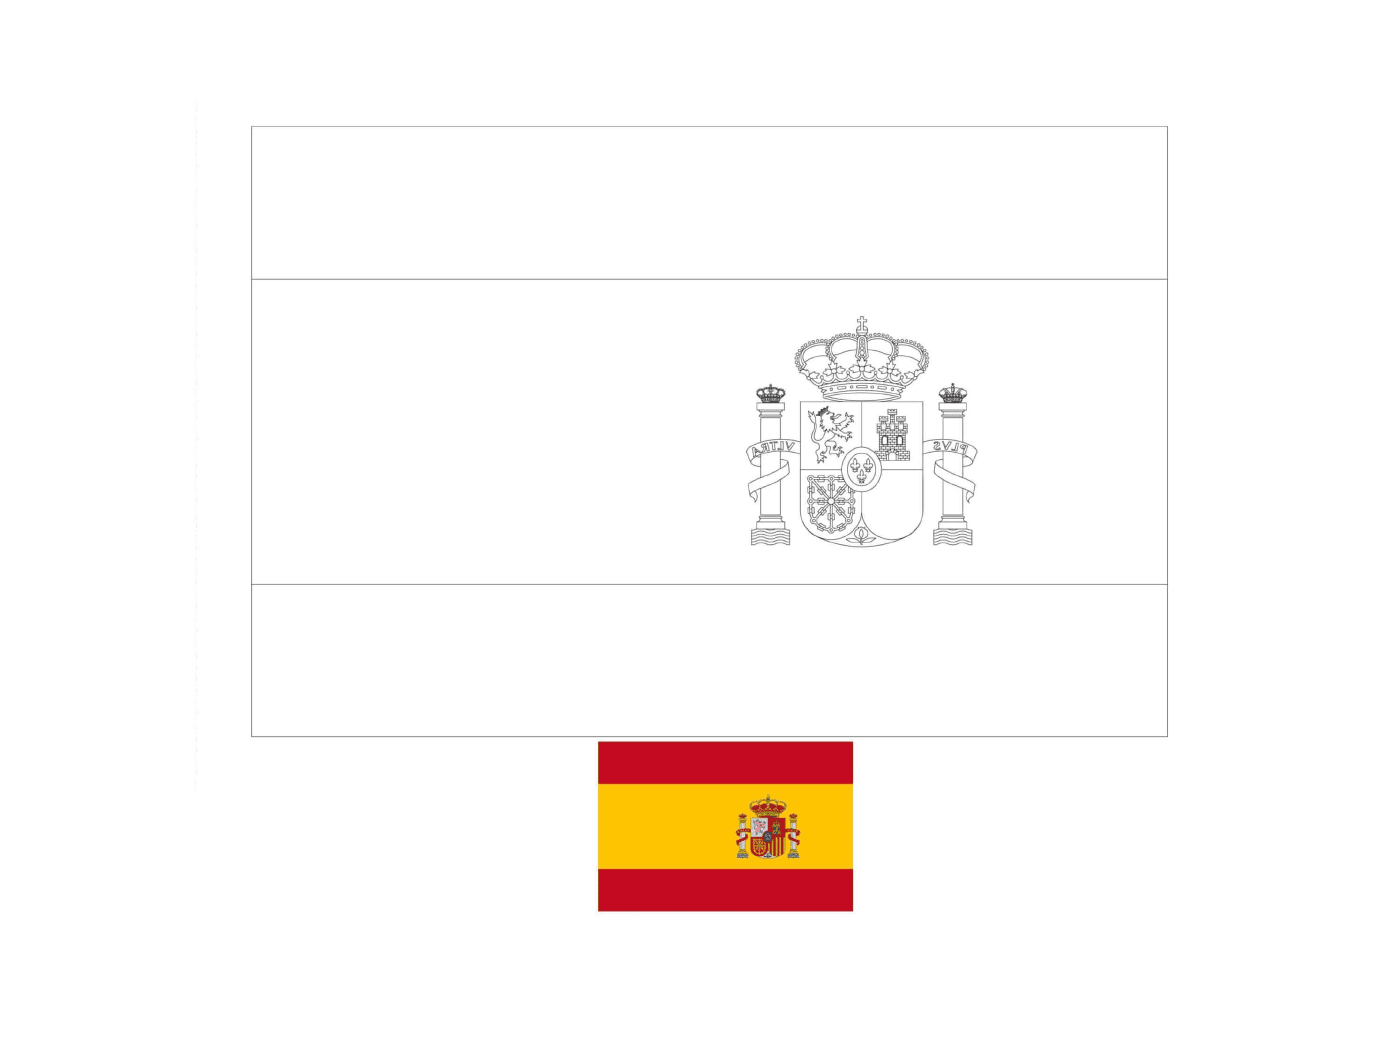   Drapeau de l'Espagne dessiné avec des exemples 